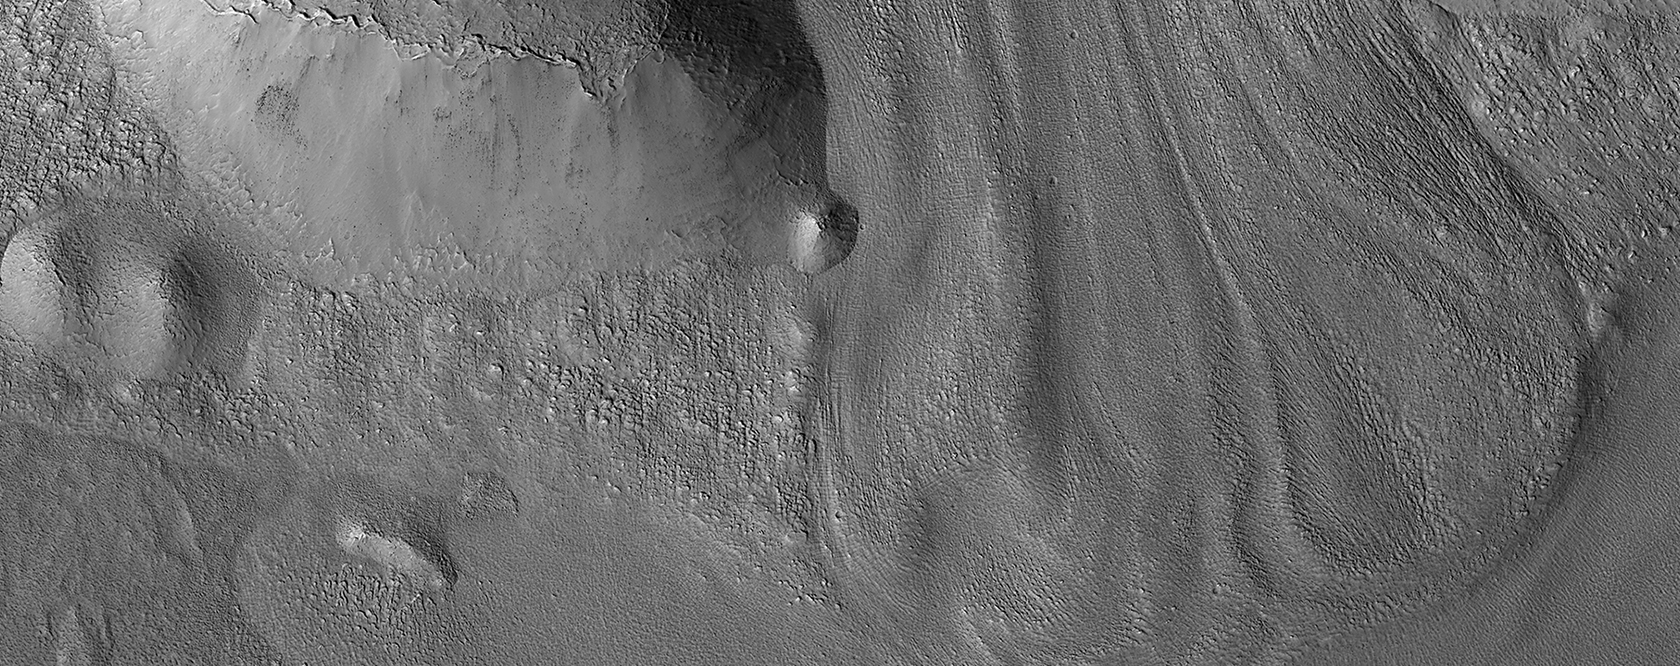 Glacier-like Features on Mars